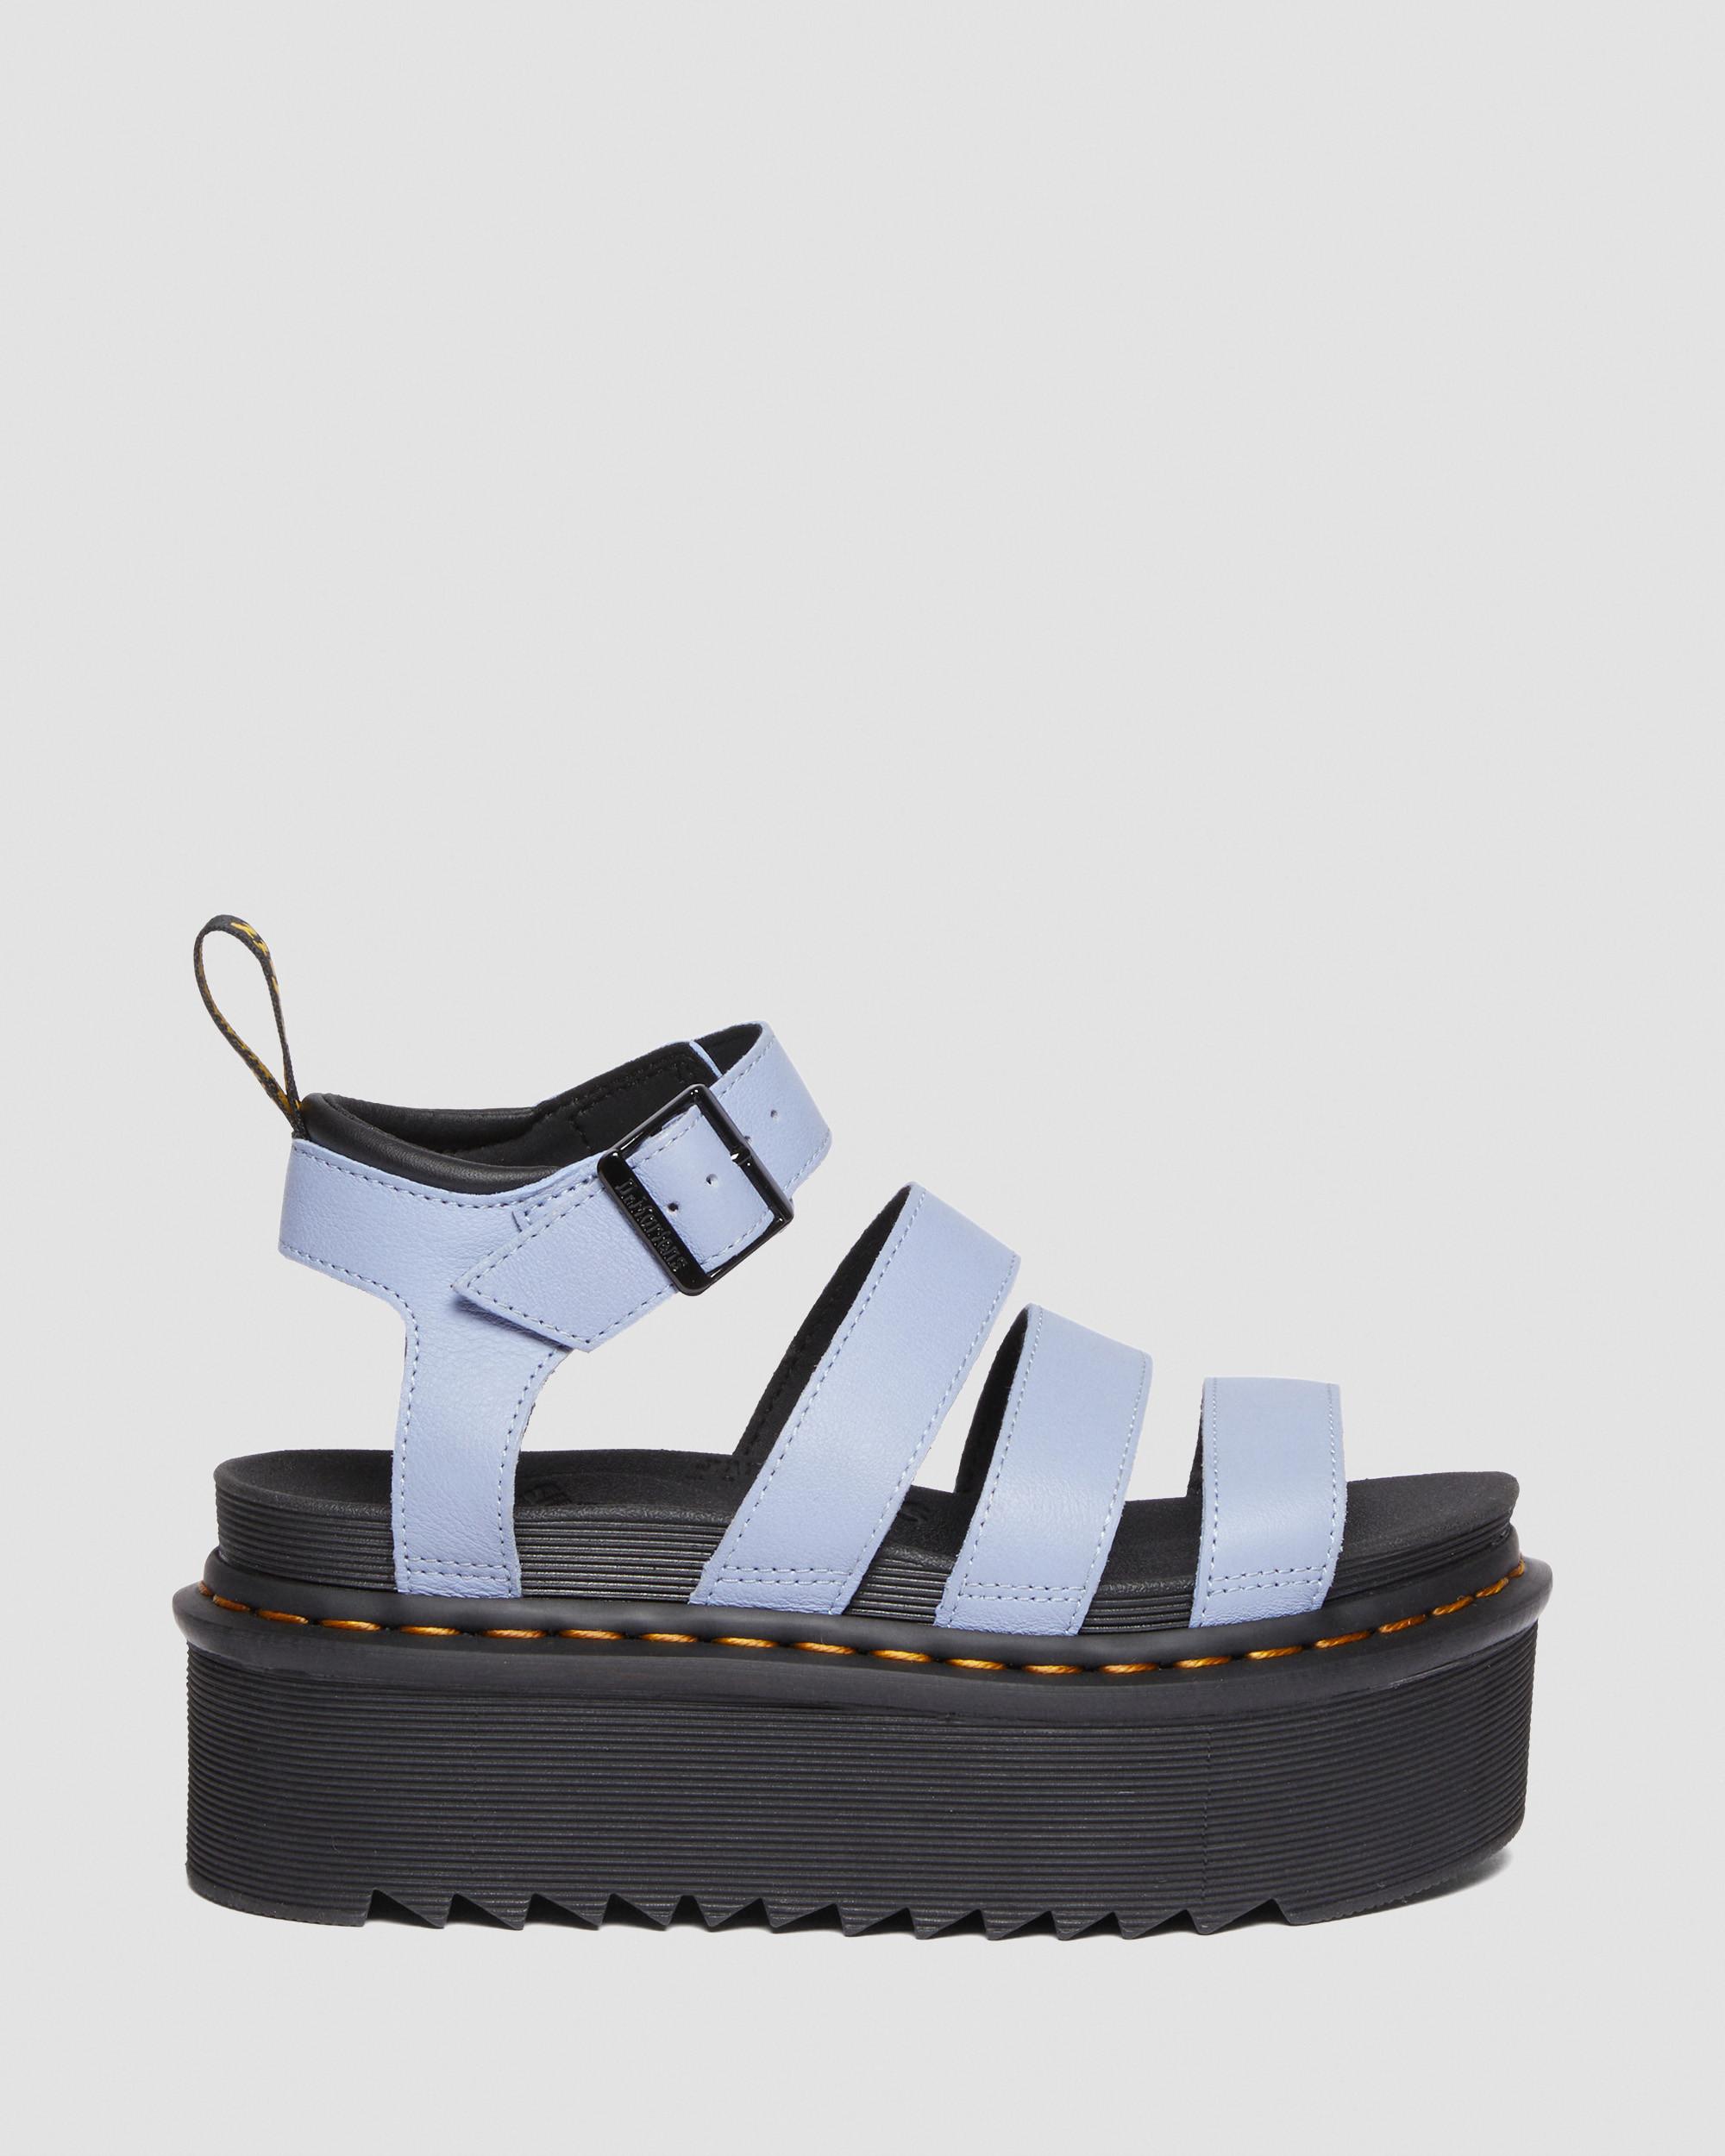 Blaire Quad Pisa Leather Strap Platform Sandals in Zen Blue